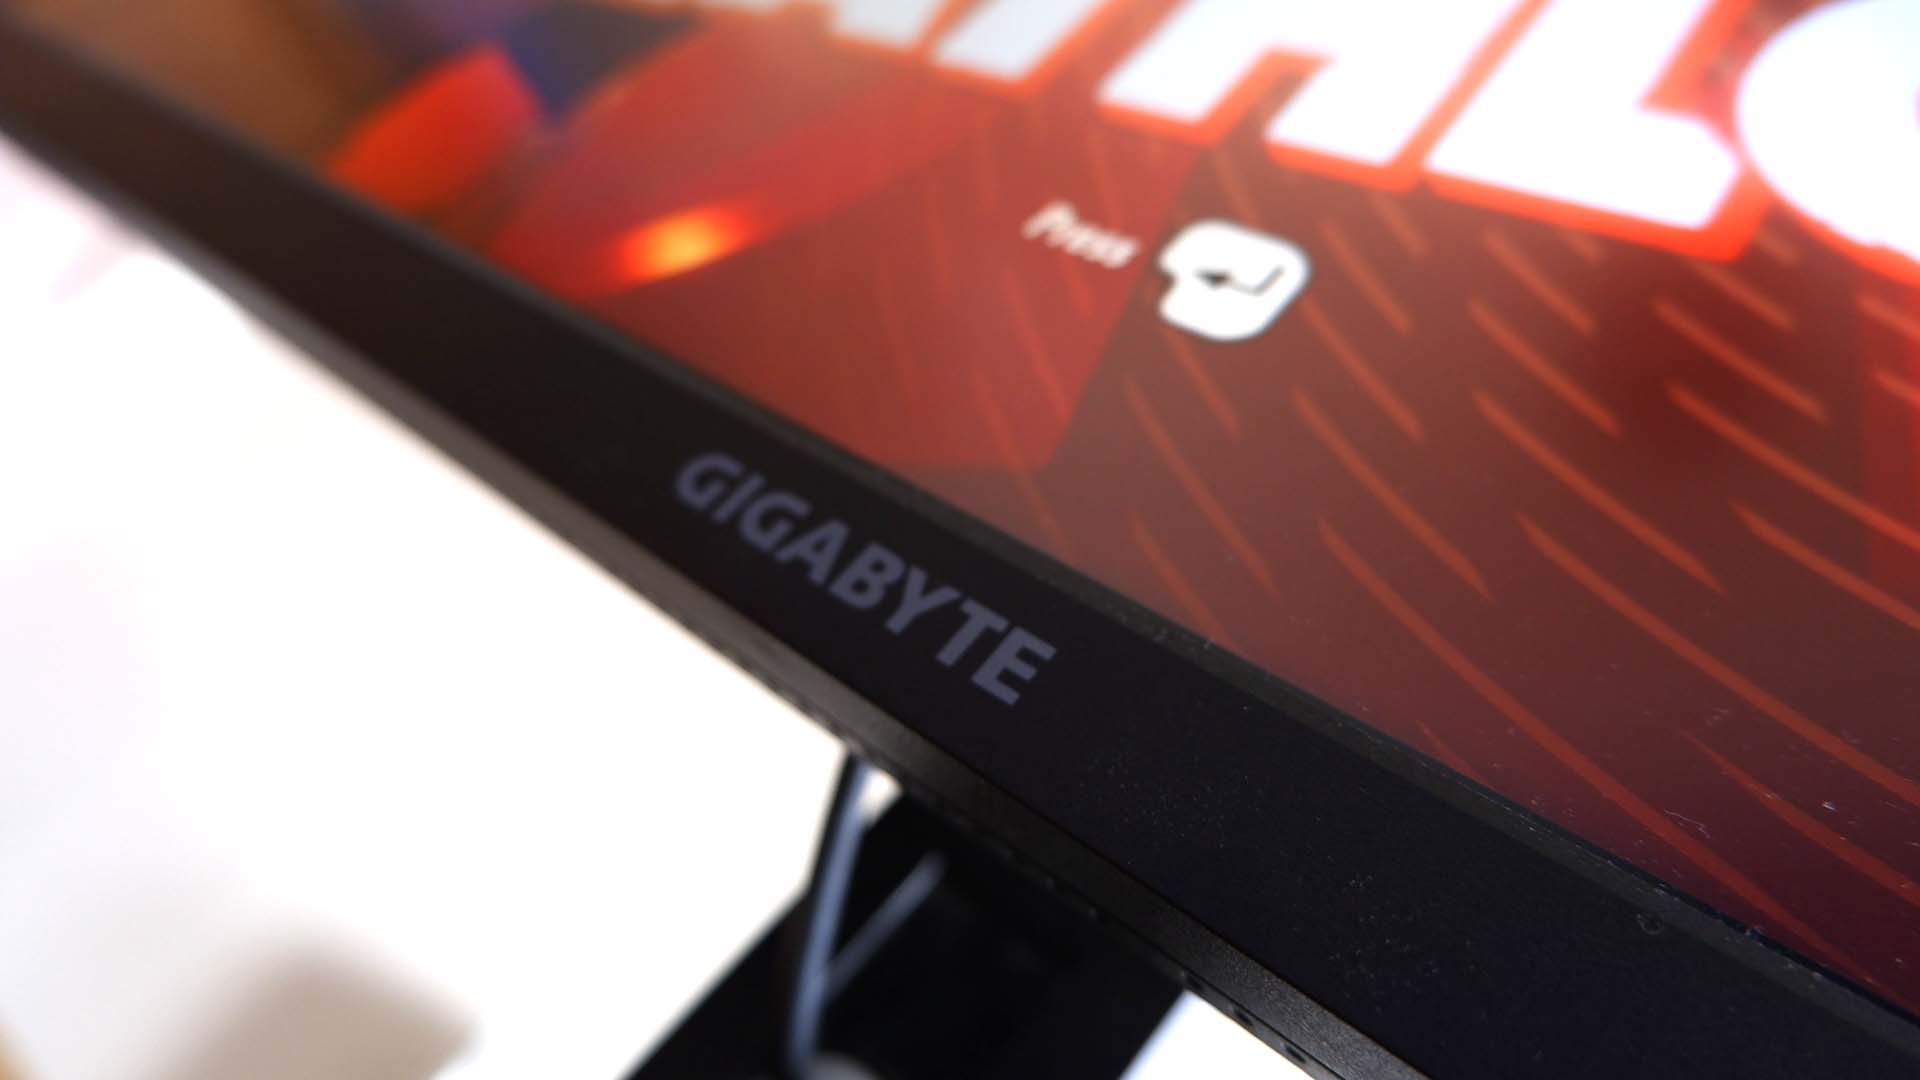 Ігровий монітор Gigabyte M28U, зображений на столі